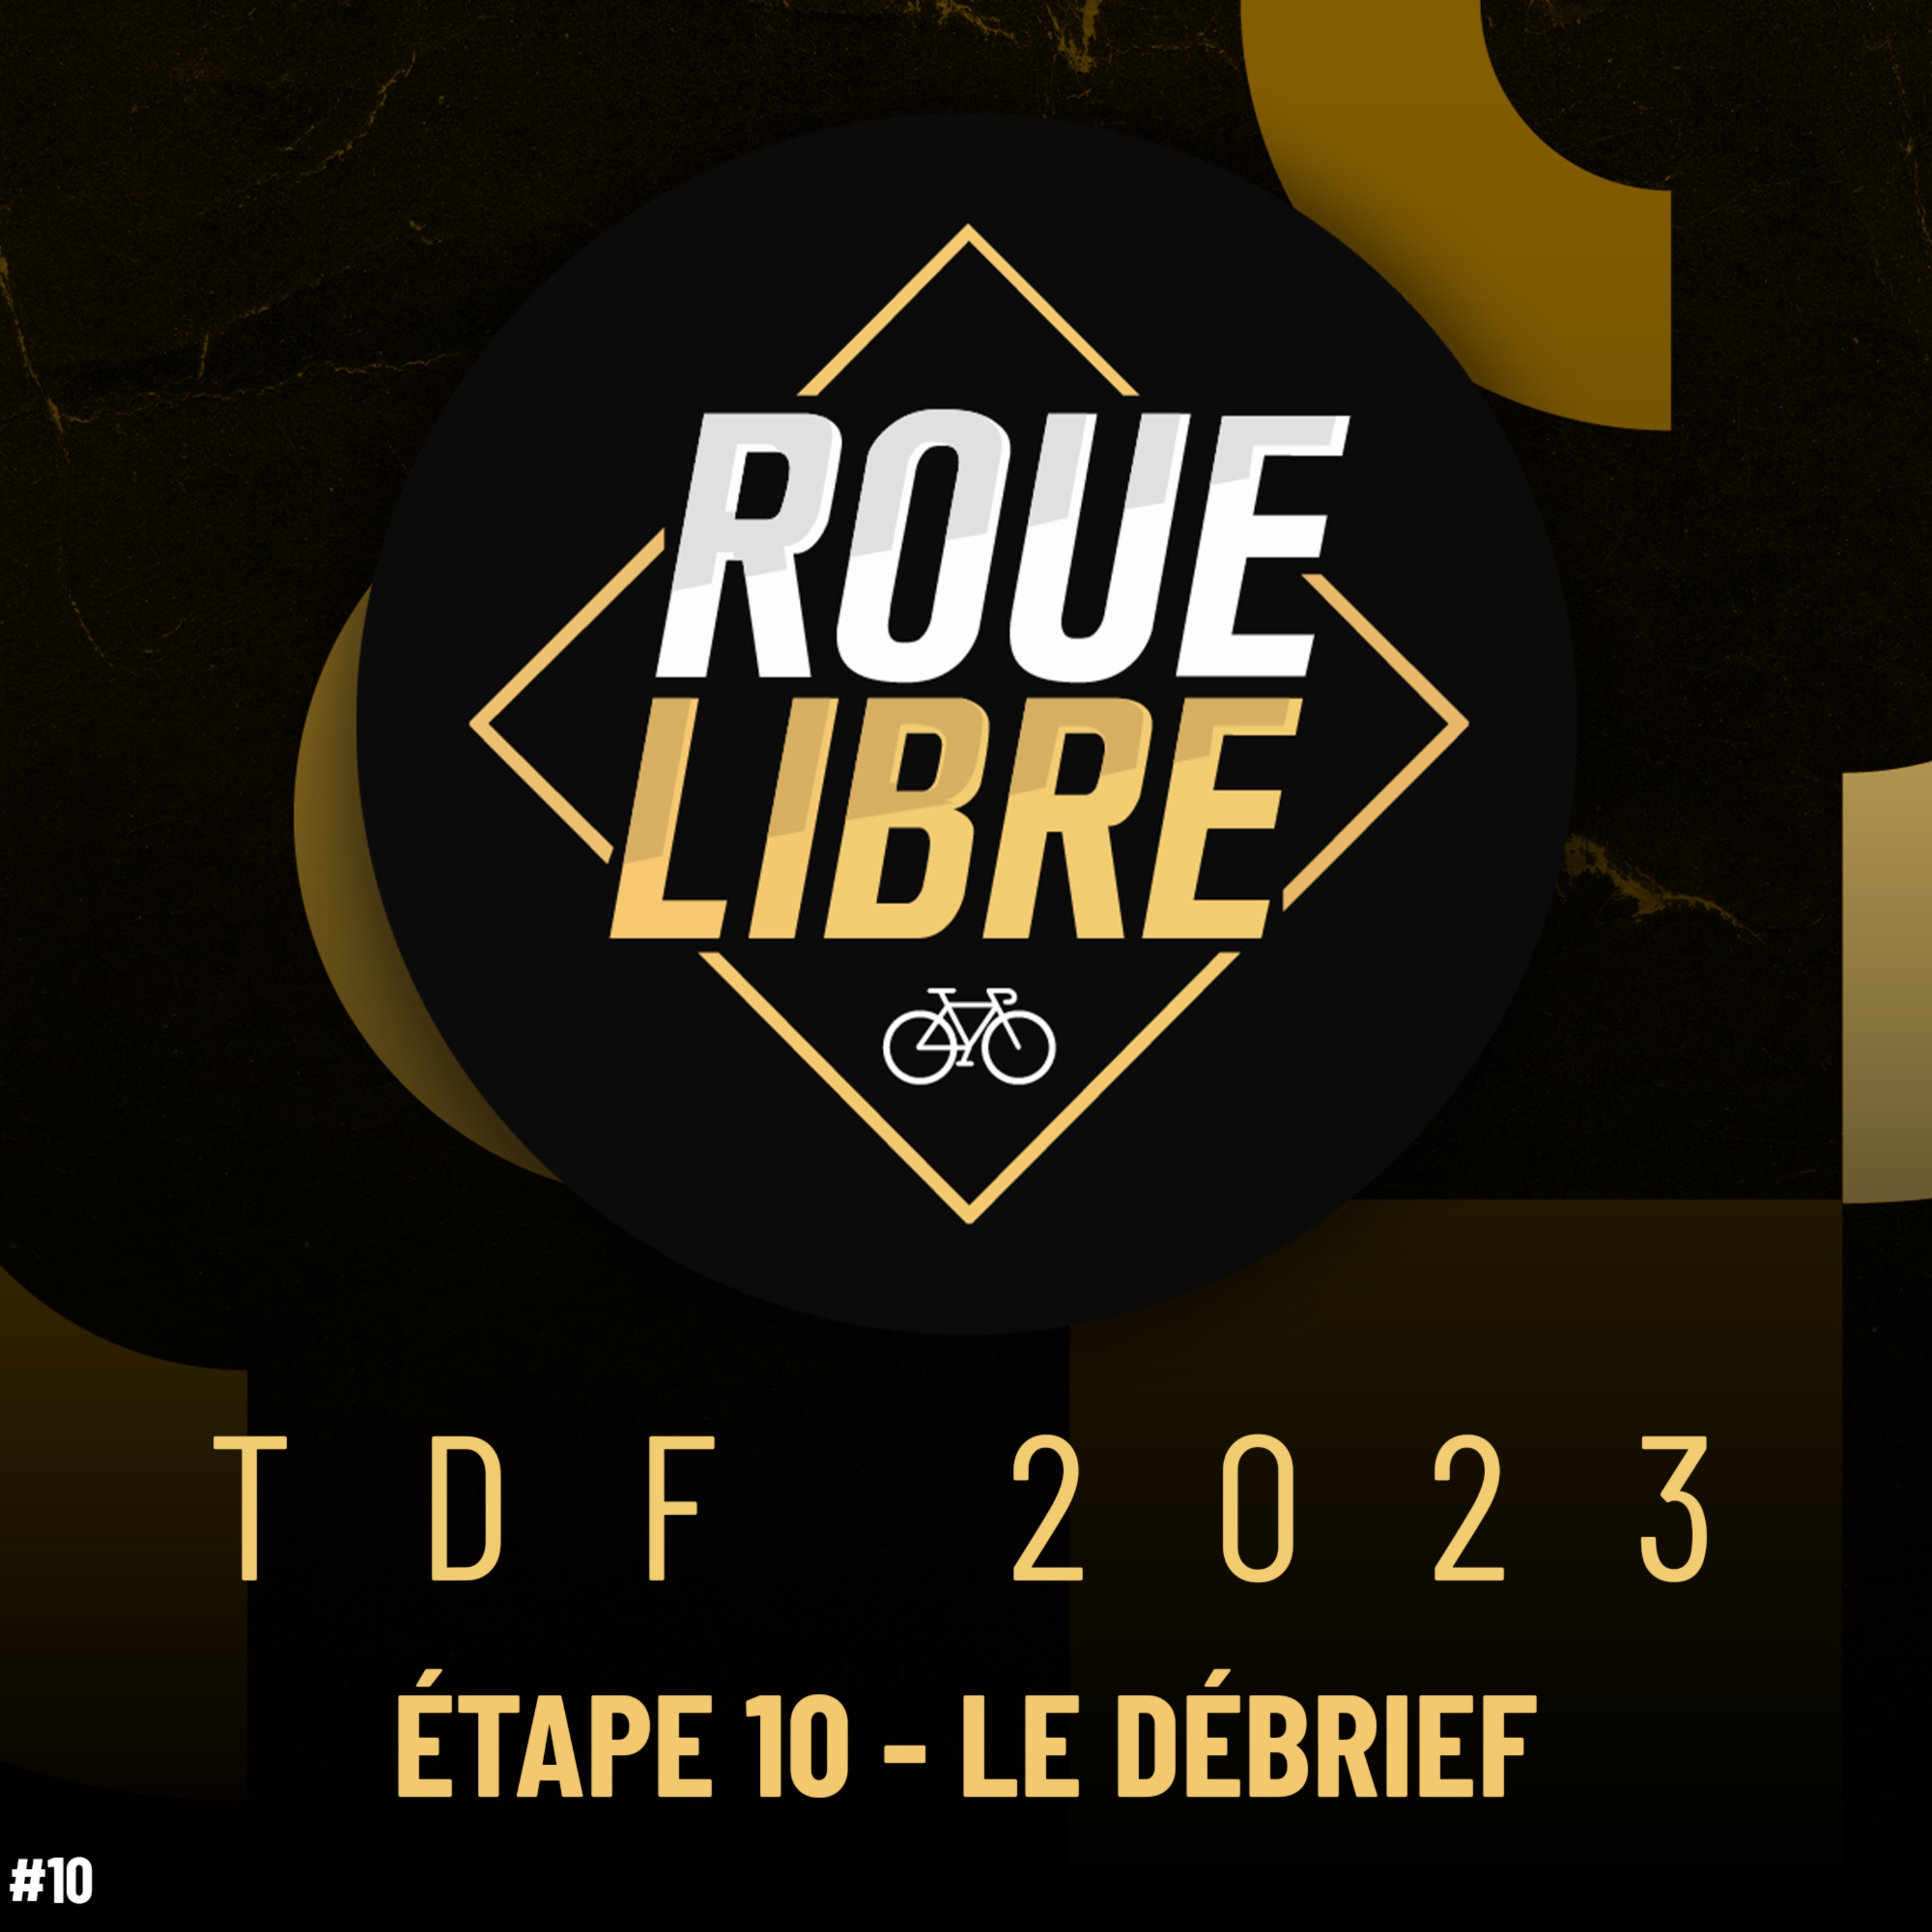 BILBAO GAGNE, CARNAGE DERRIÈRE ! Tour de France débrief #10 Roue Libre